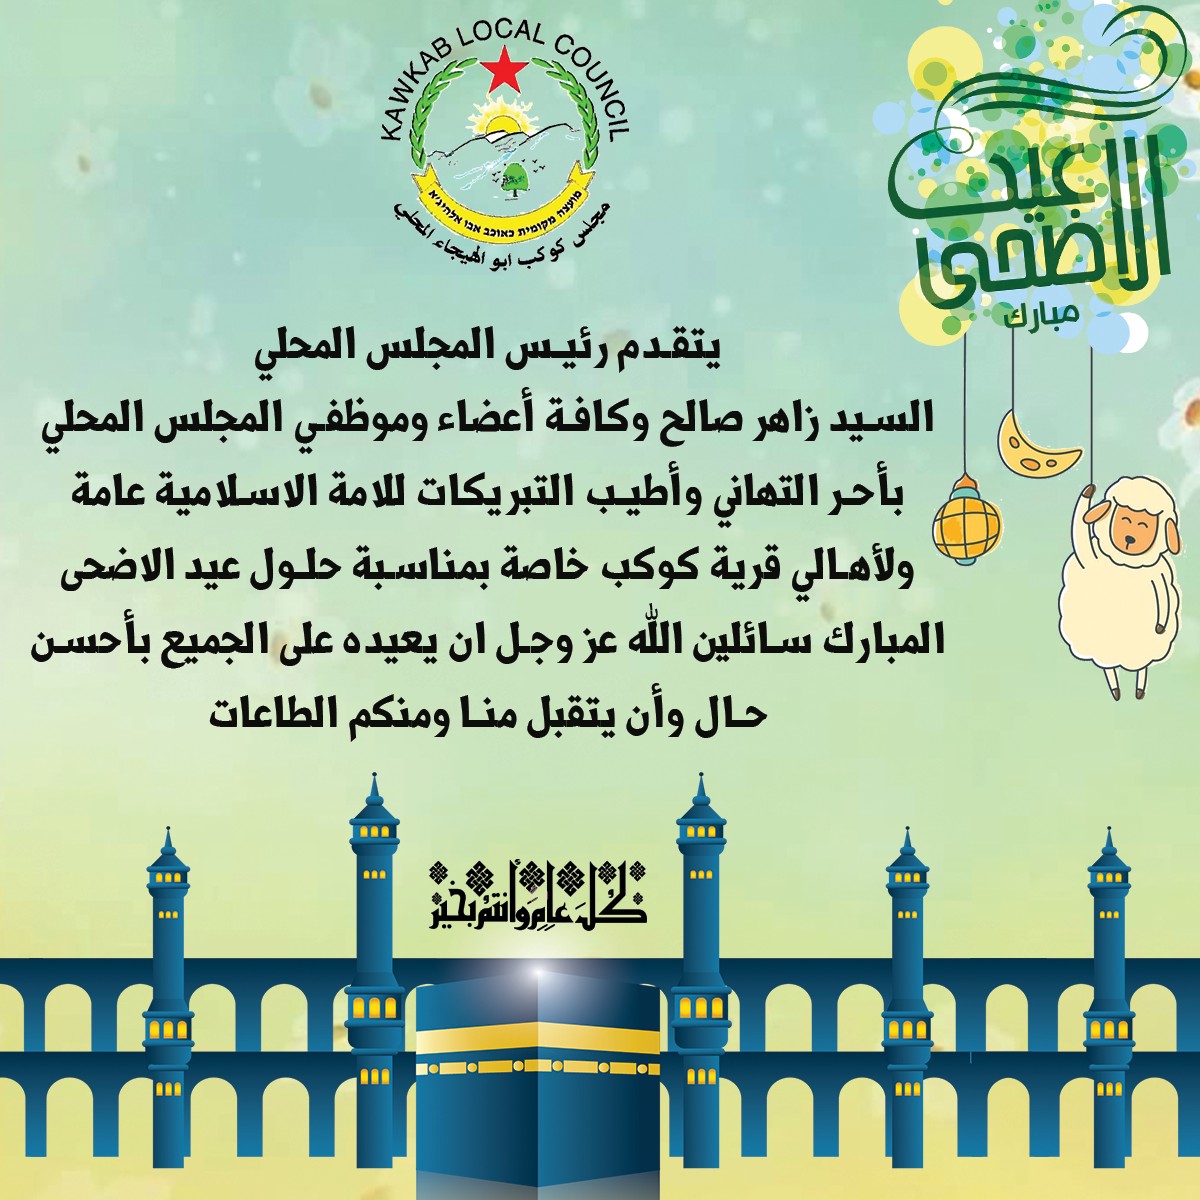 مجلس كوكب ابو الهيجاء المحلي يهنىء بحلول عيد الأضحى المبارك